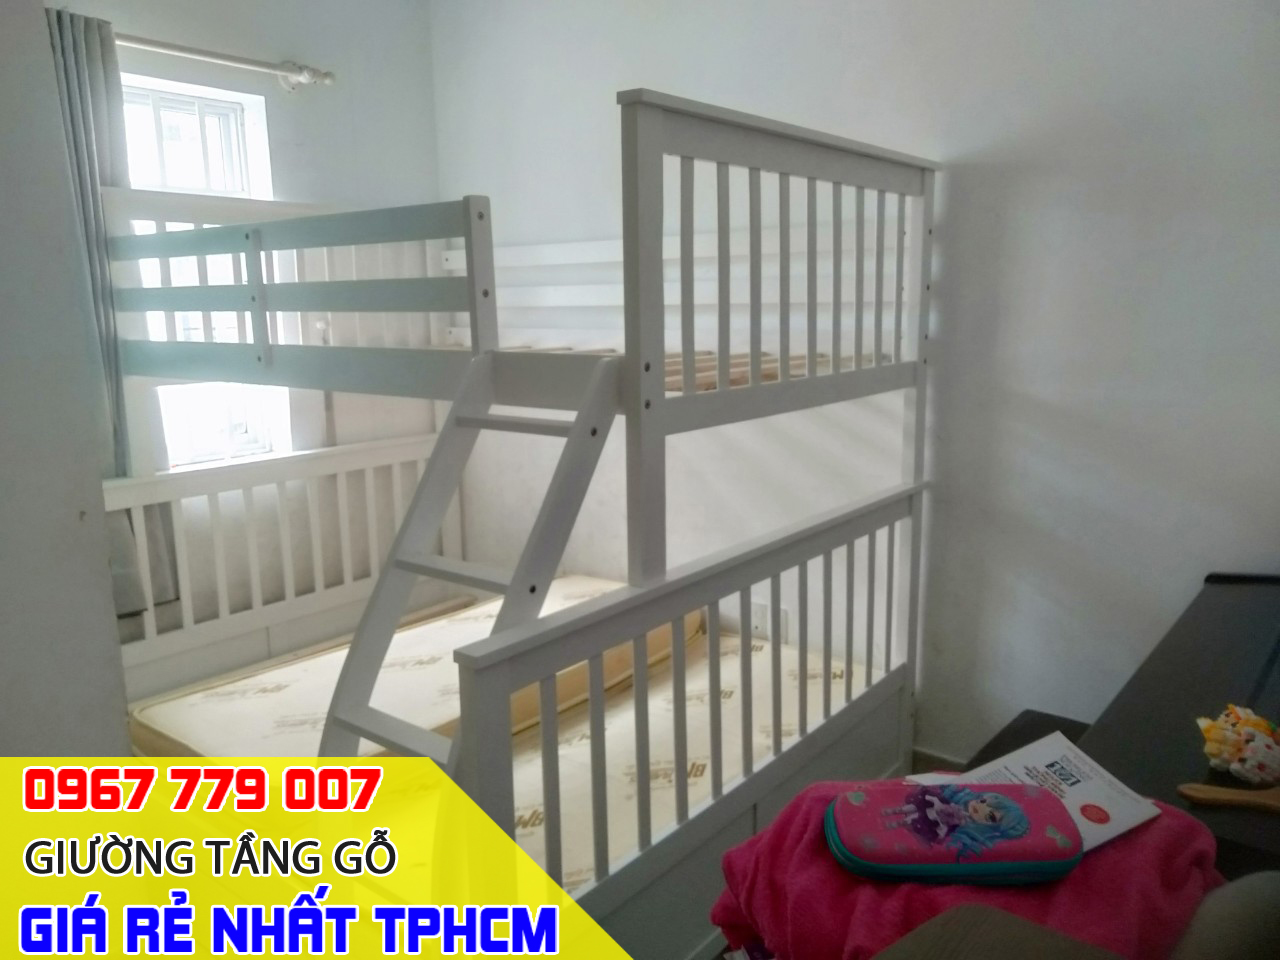 Tổng hợp các mẫu giường tầng trẻ em lắp ráp thực tế tại nhà khách hàng đã đặt mua TPHCM 05-2023 P1